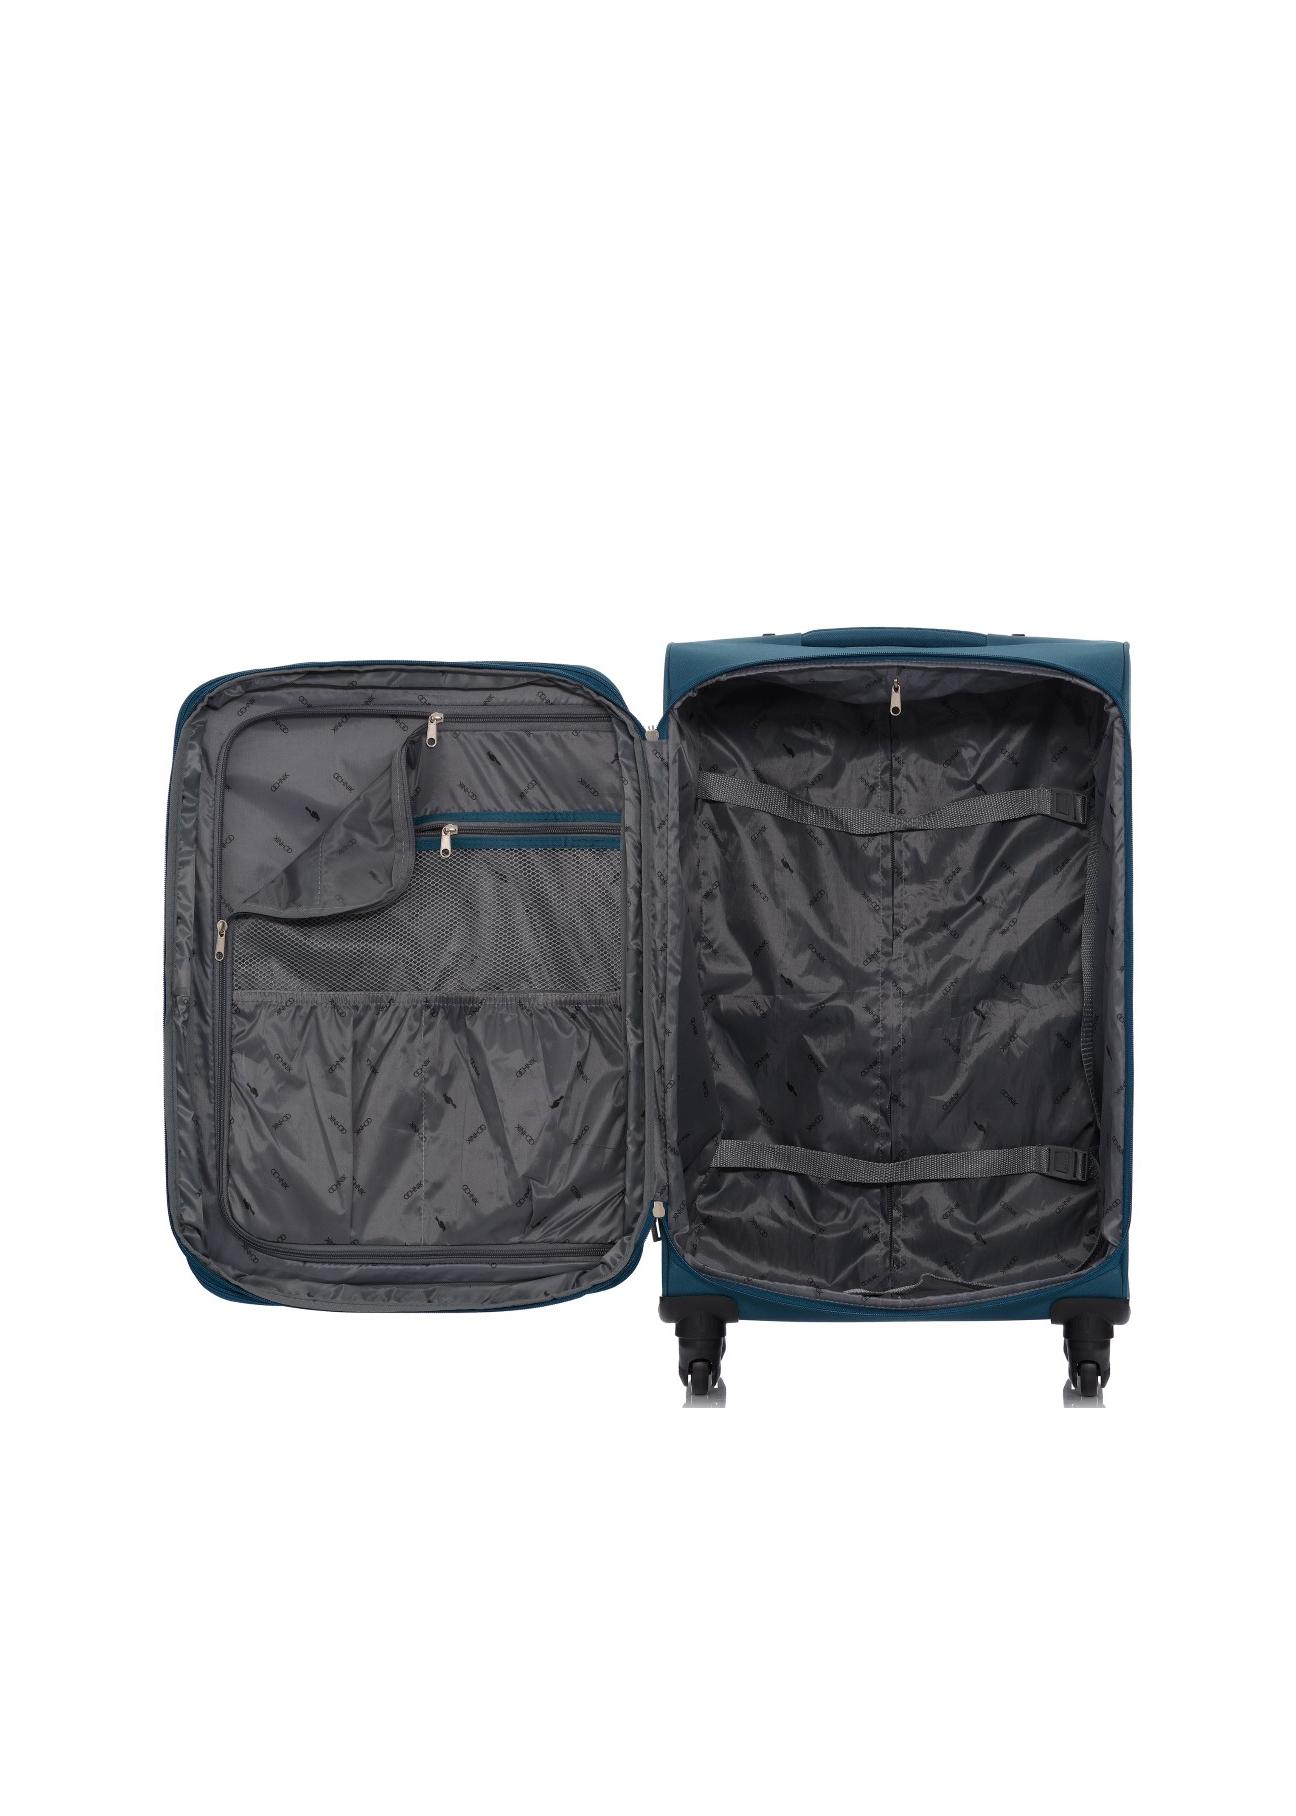 Duża walizka na kółkach WALNY-0017-63-28